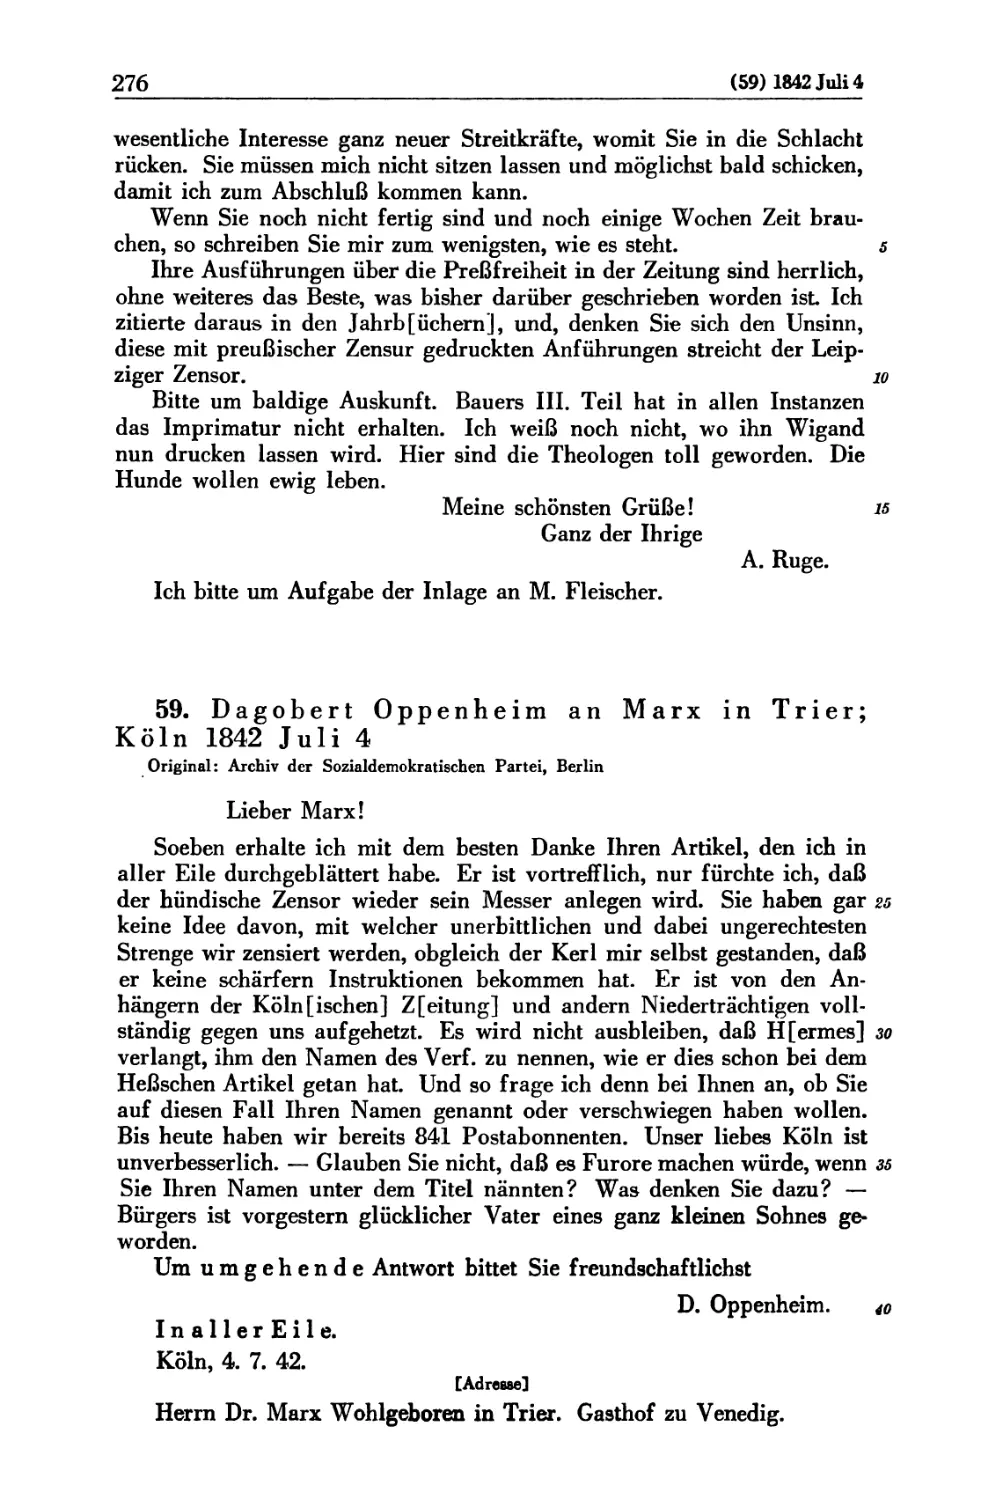 59. Dagobert Oppenheim an Marx in Trier; Köln 1842 Juli 4